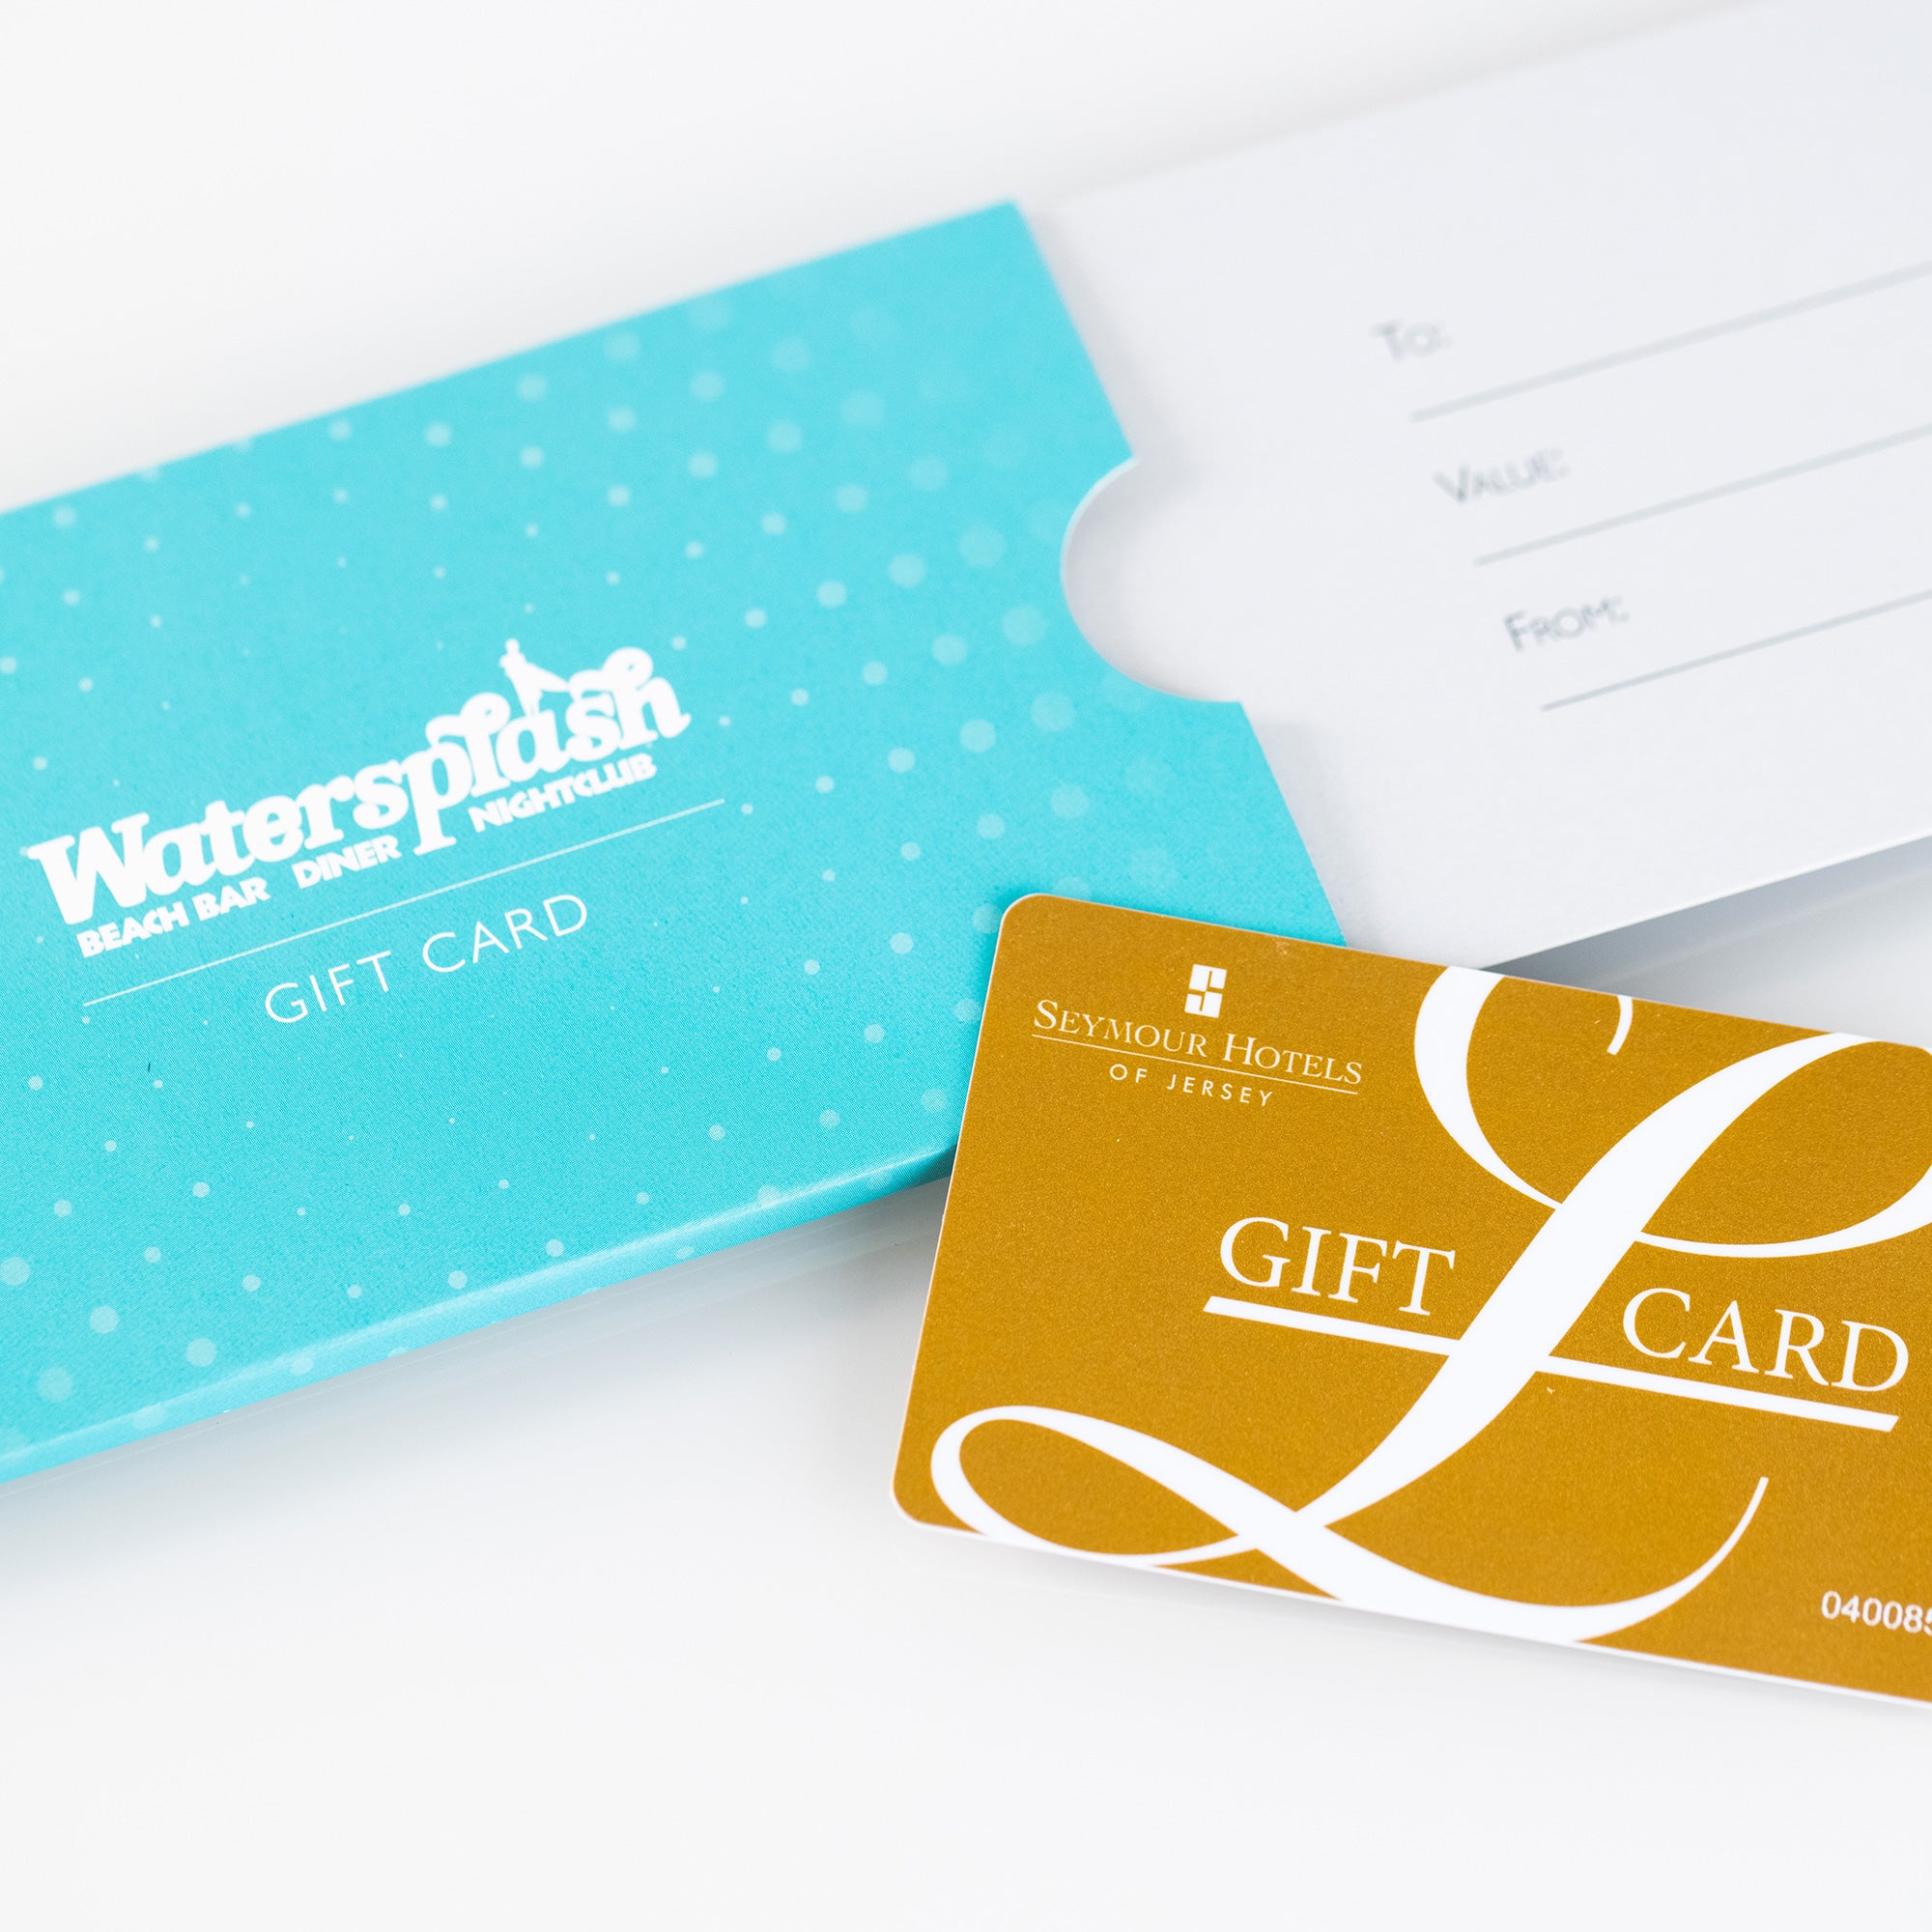 Watersplash Gift Card